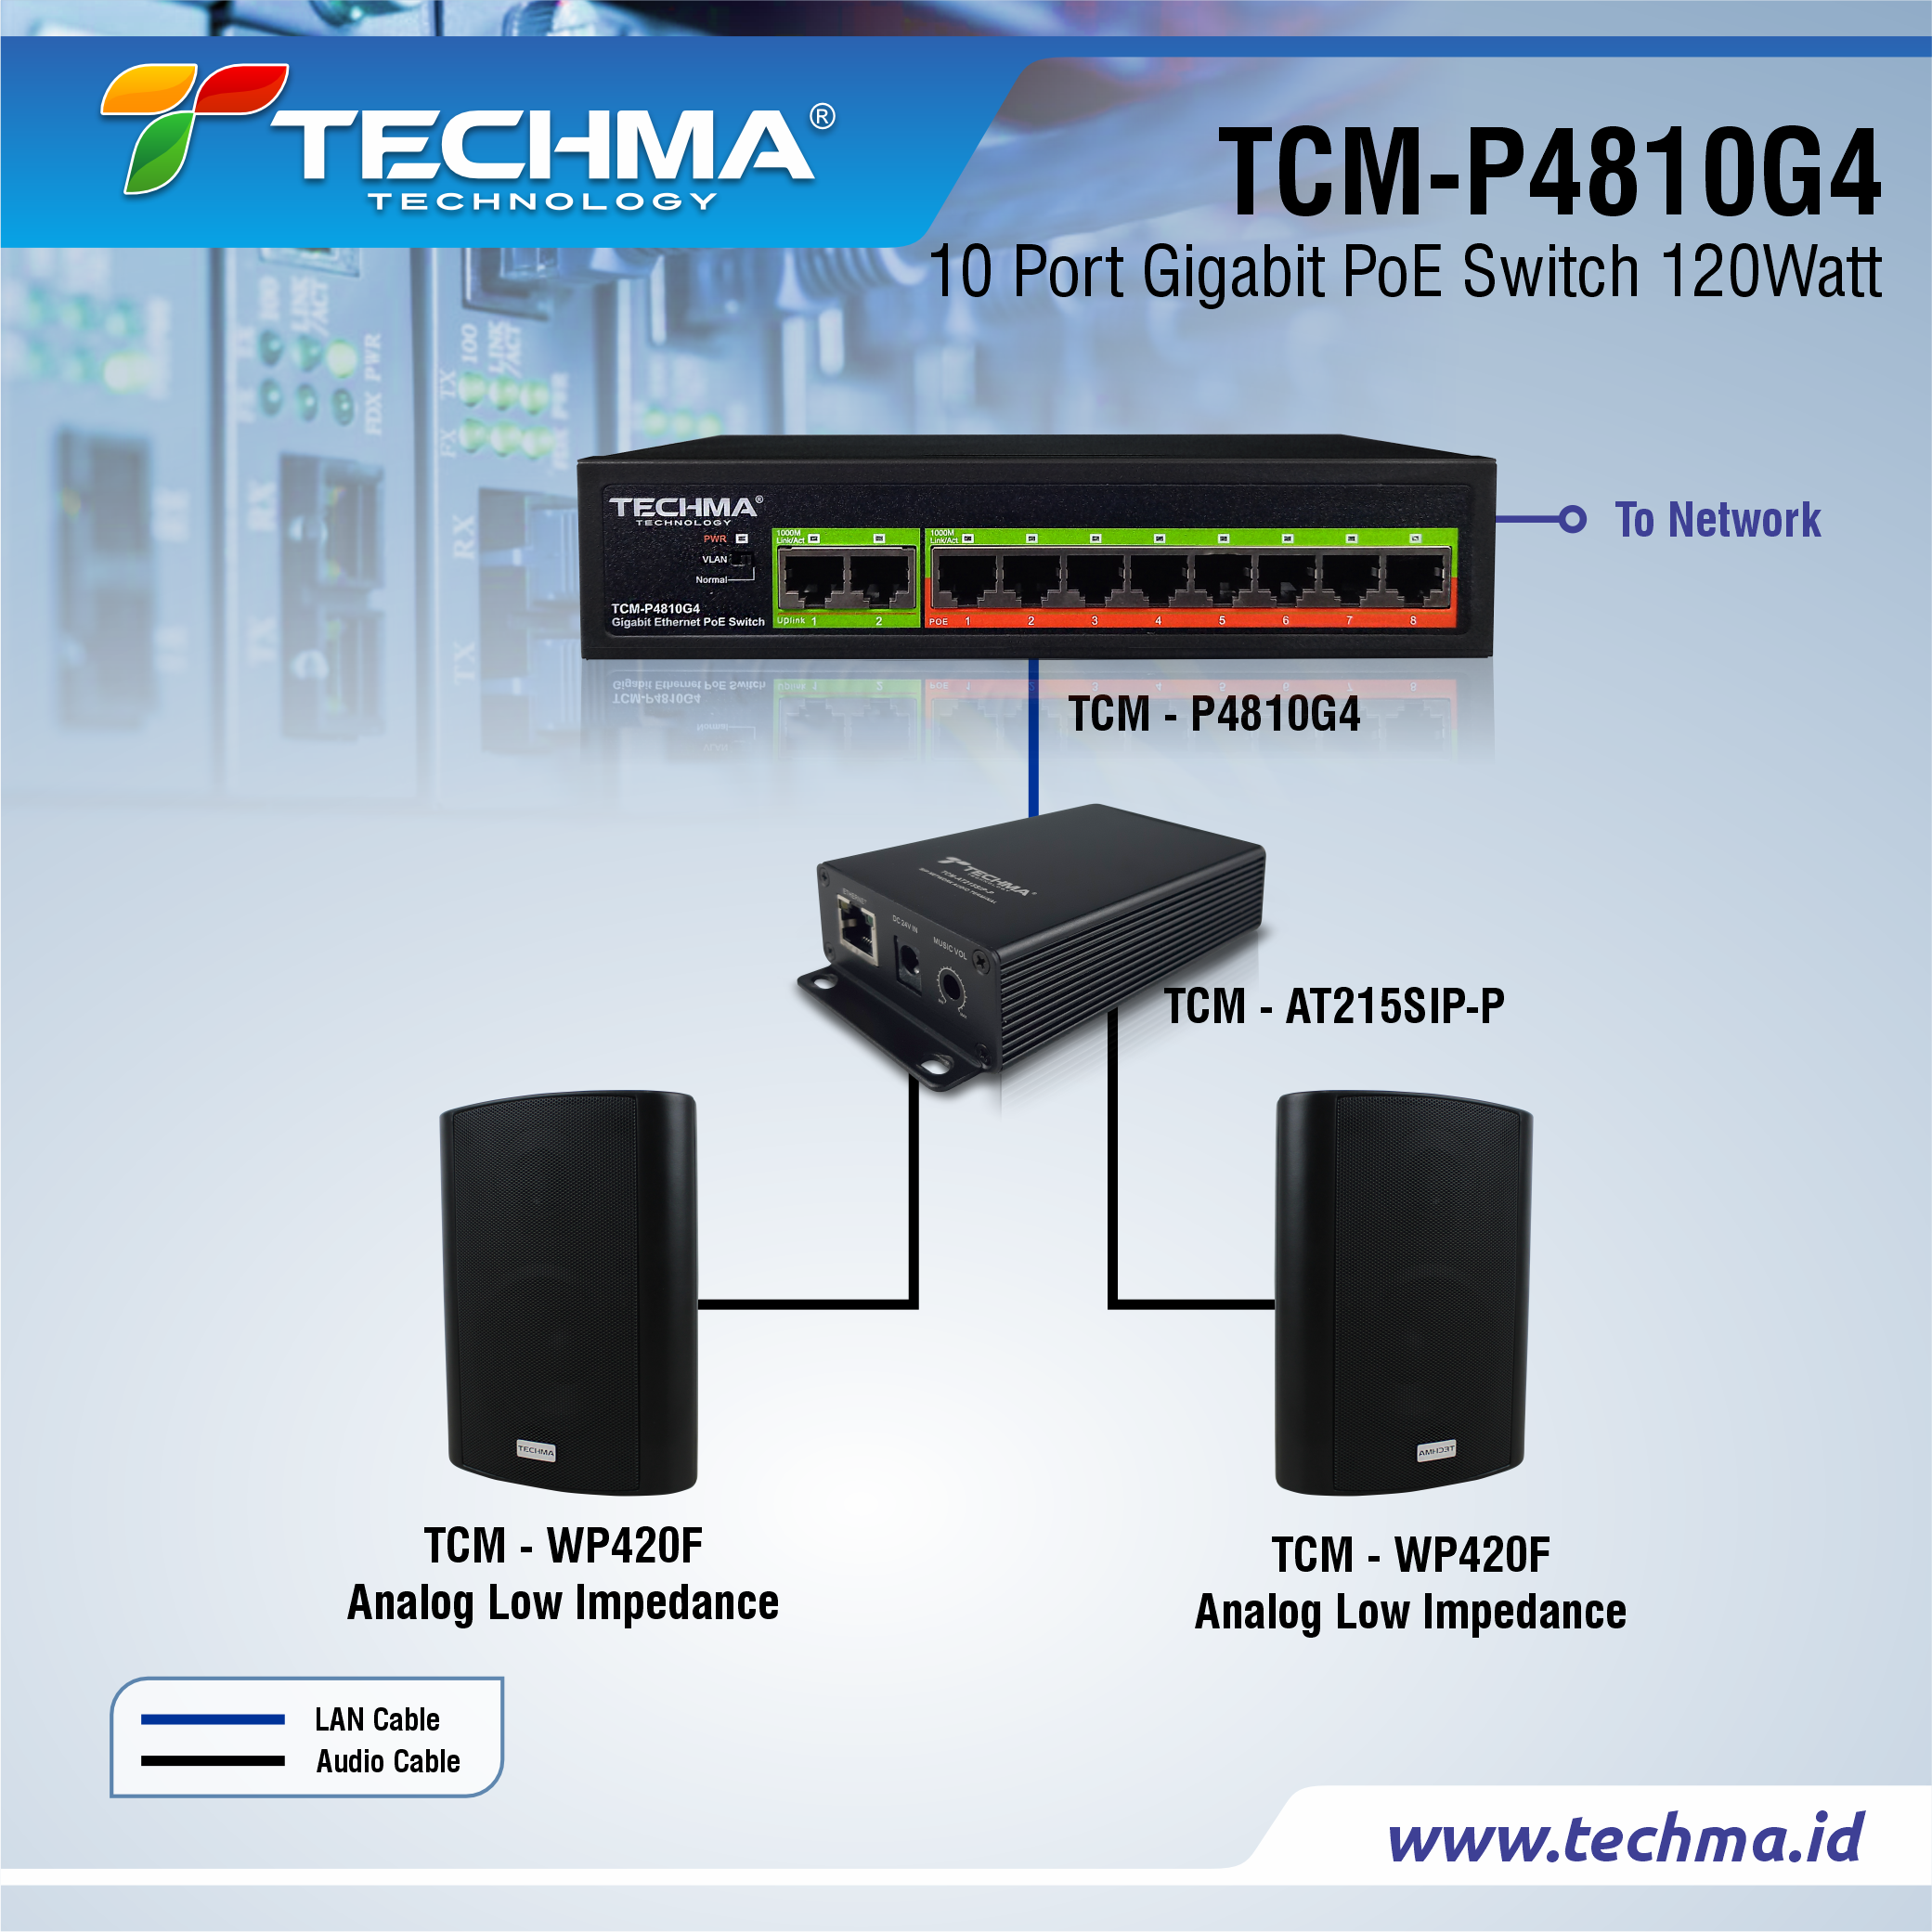 TCM-P4810G4 web 4